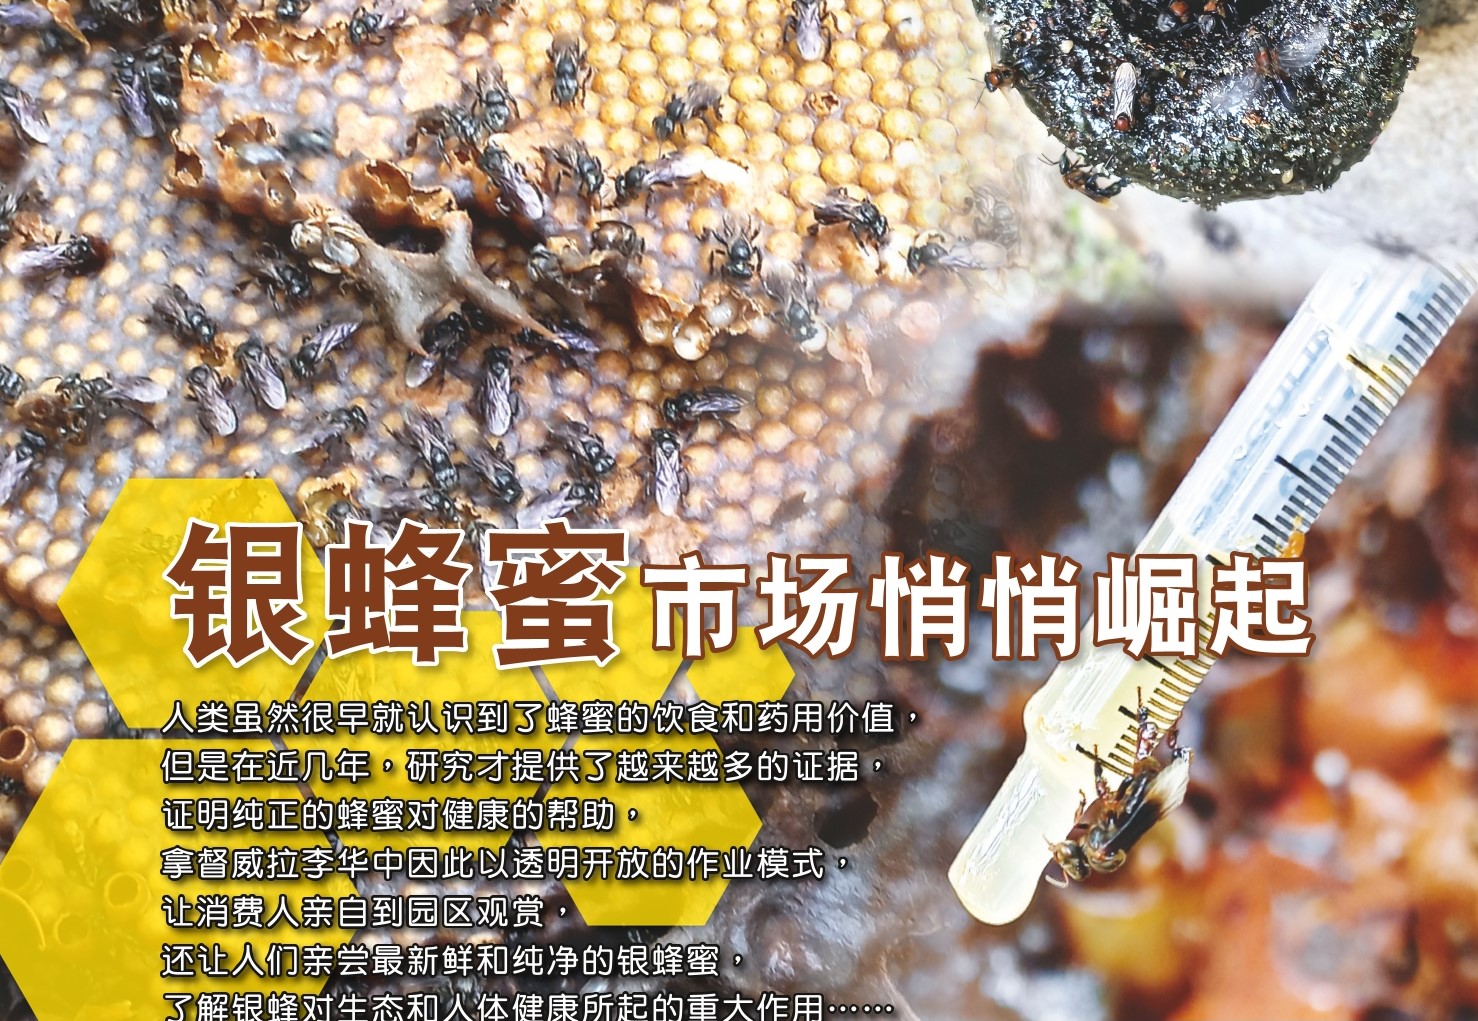 银蜂蜜市场悄悄崛起 - 农牧世界